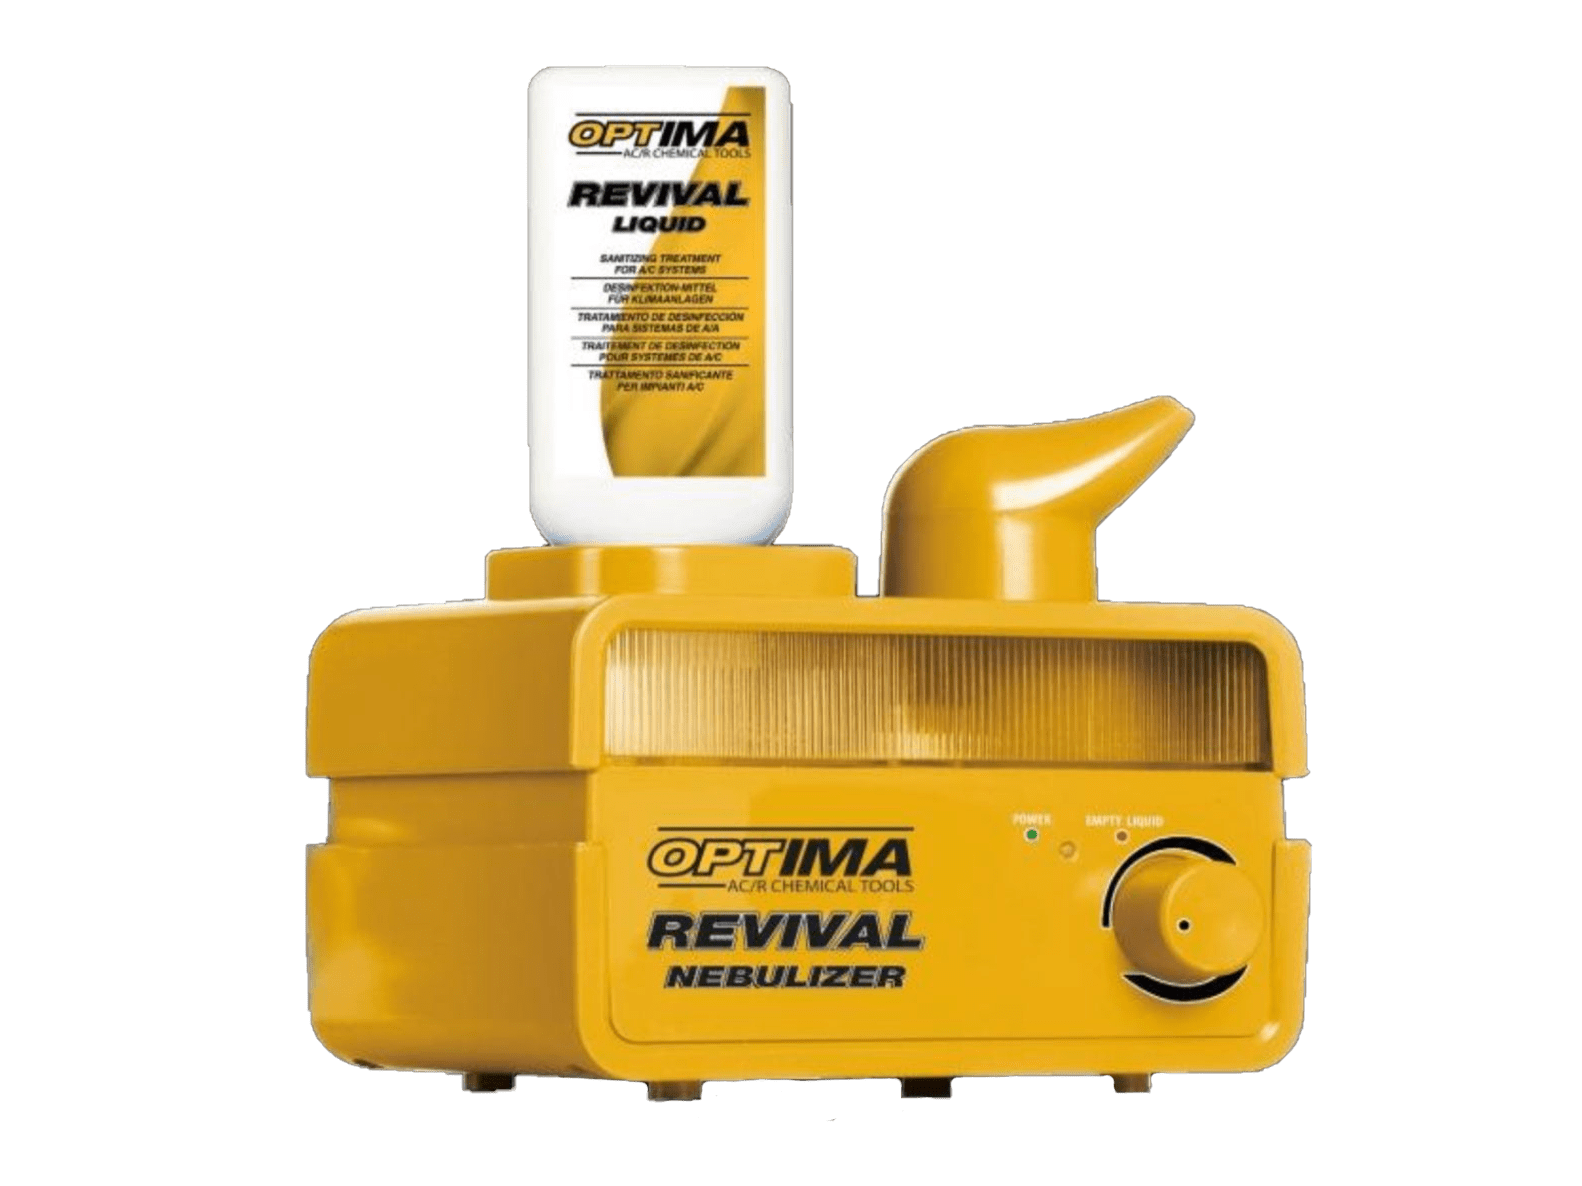 CPS Optima Revival Nebulizer